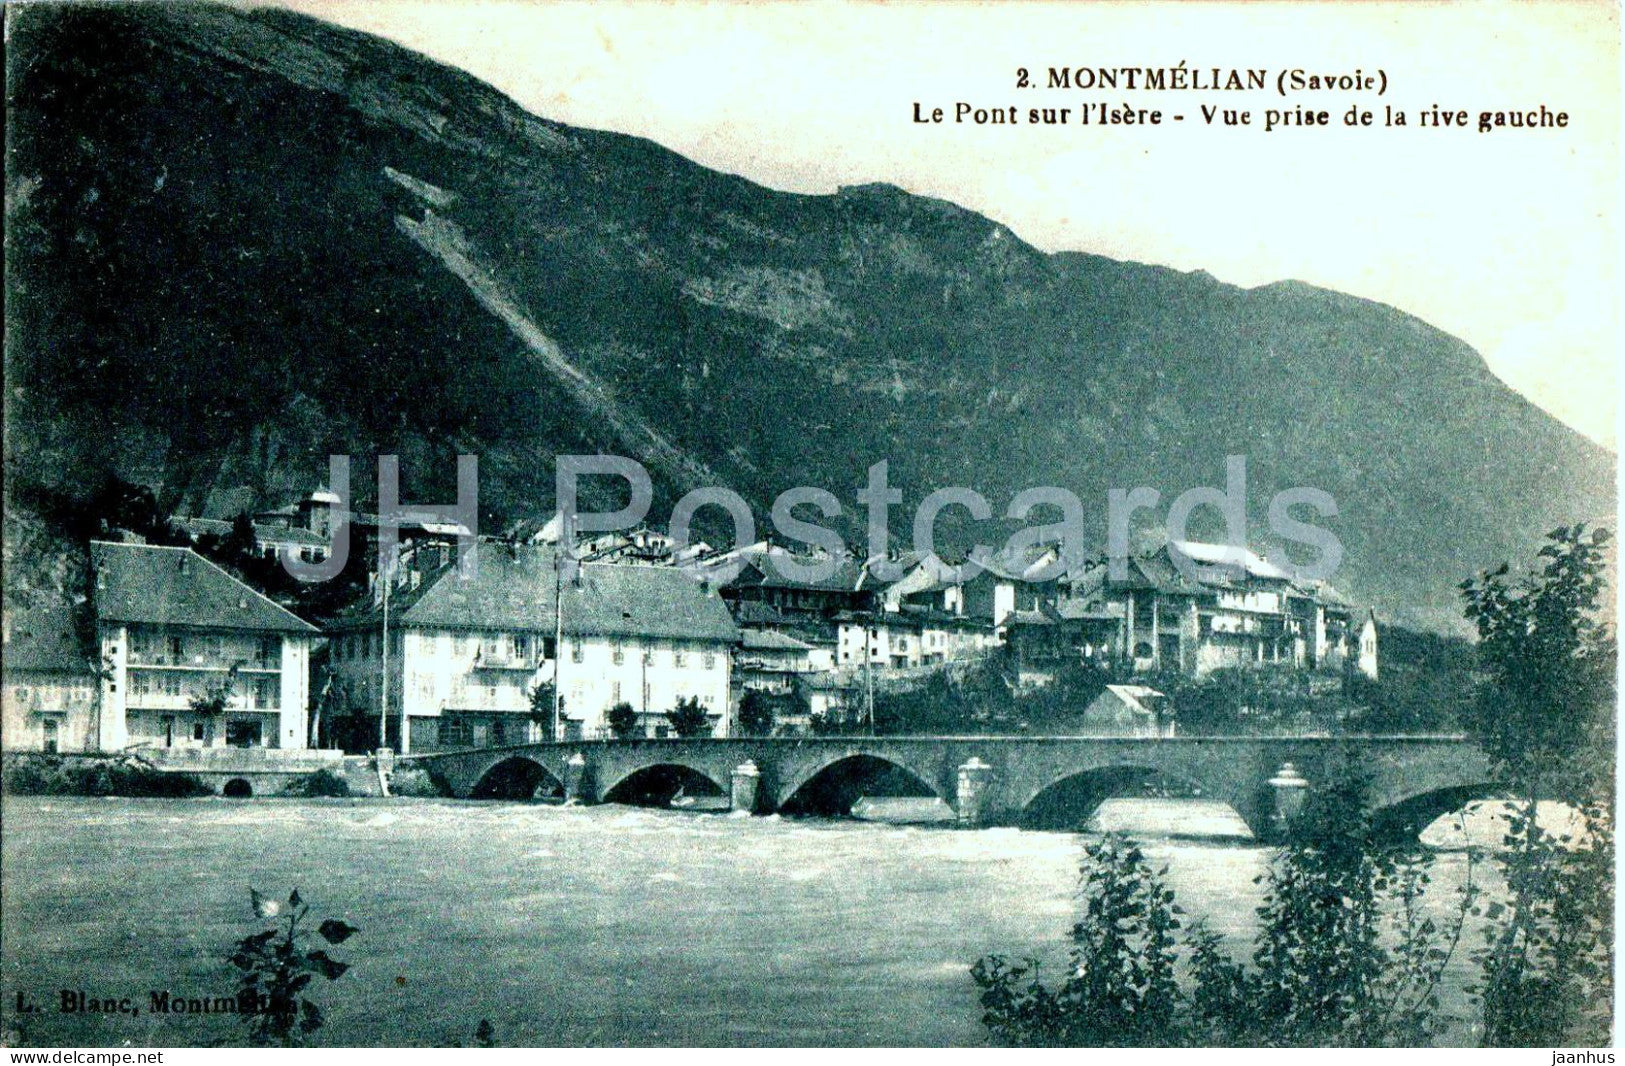 Montmelian - Le Pont sur l'Isere - Vue prise de la rive gauche - bridge - 2 - old postcard - France - used - JH Postcards